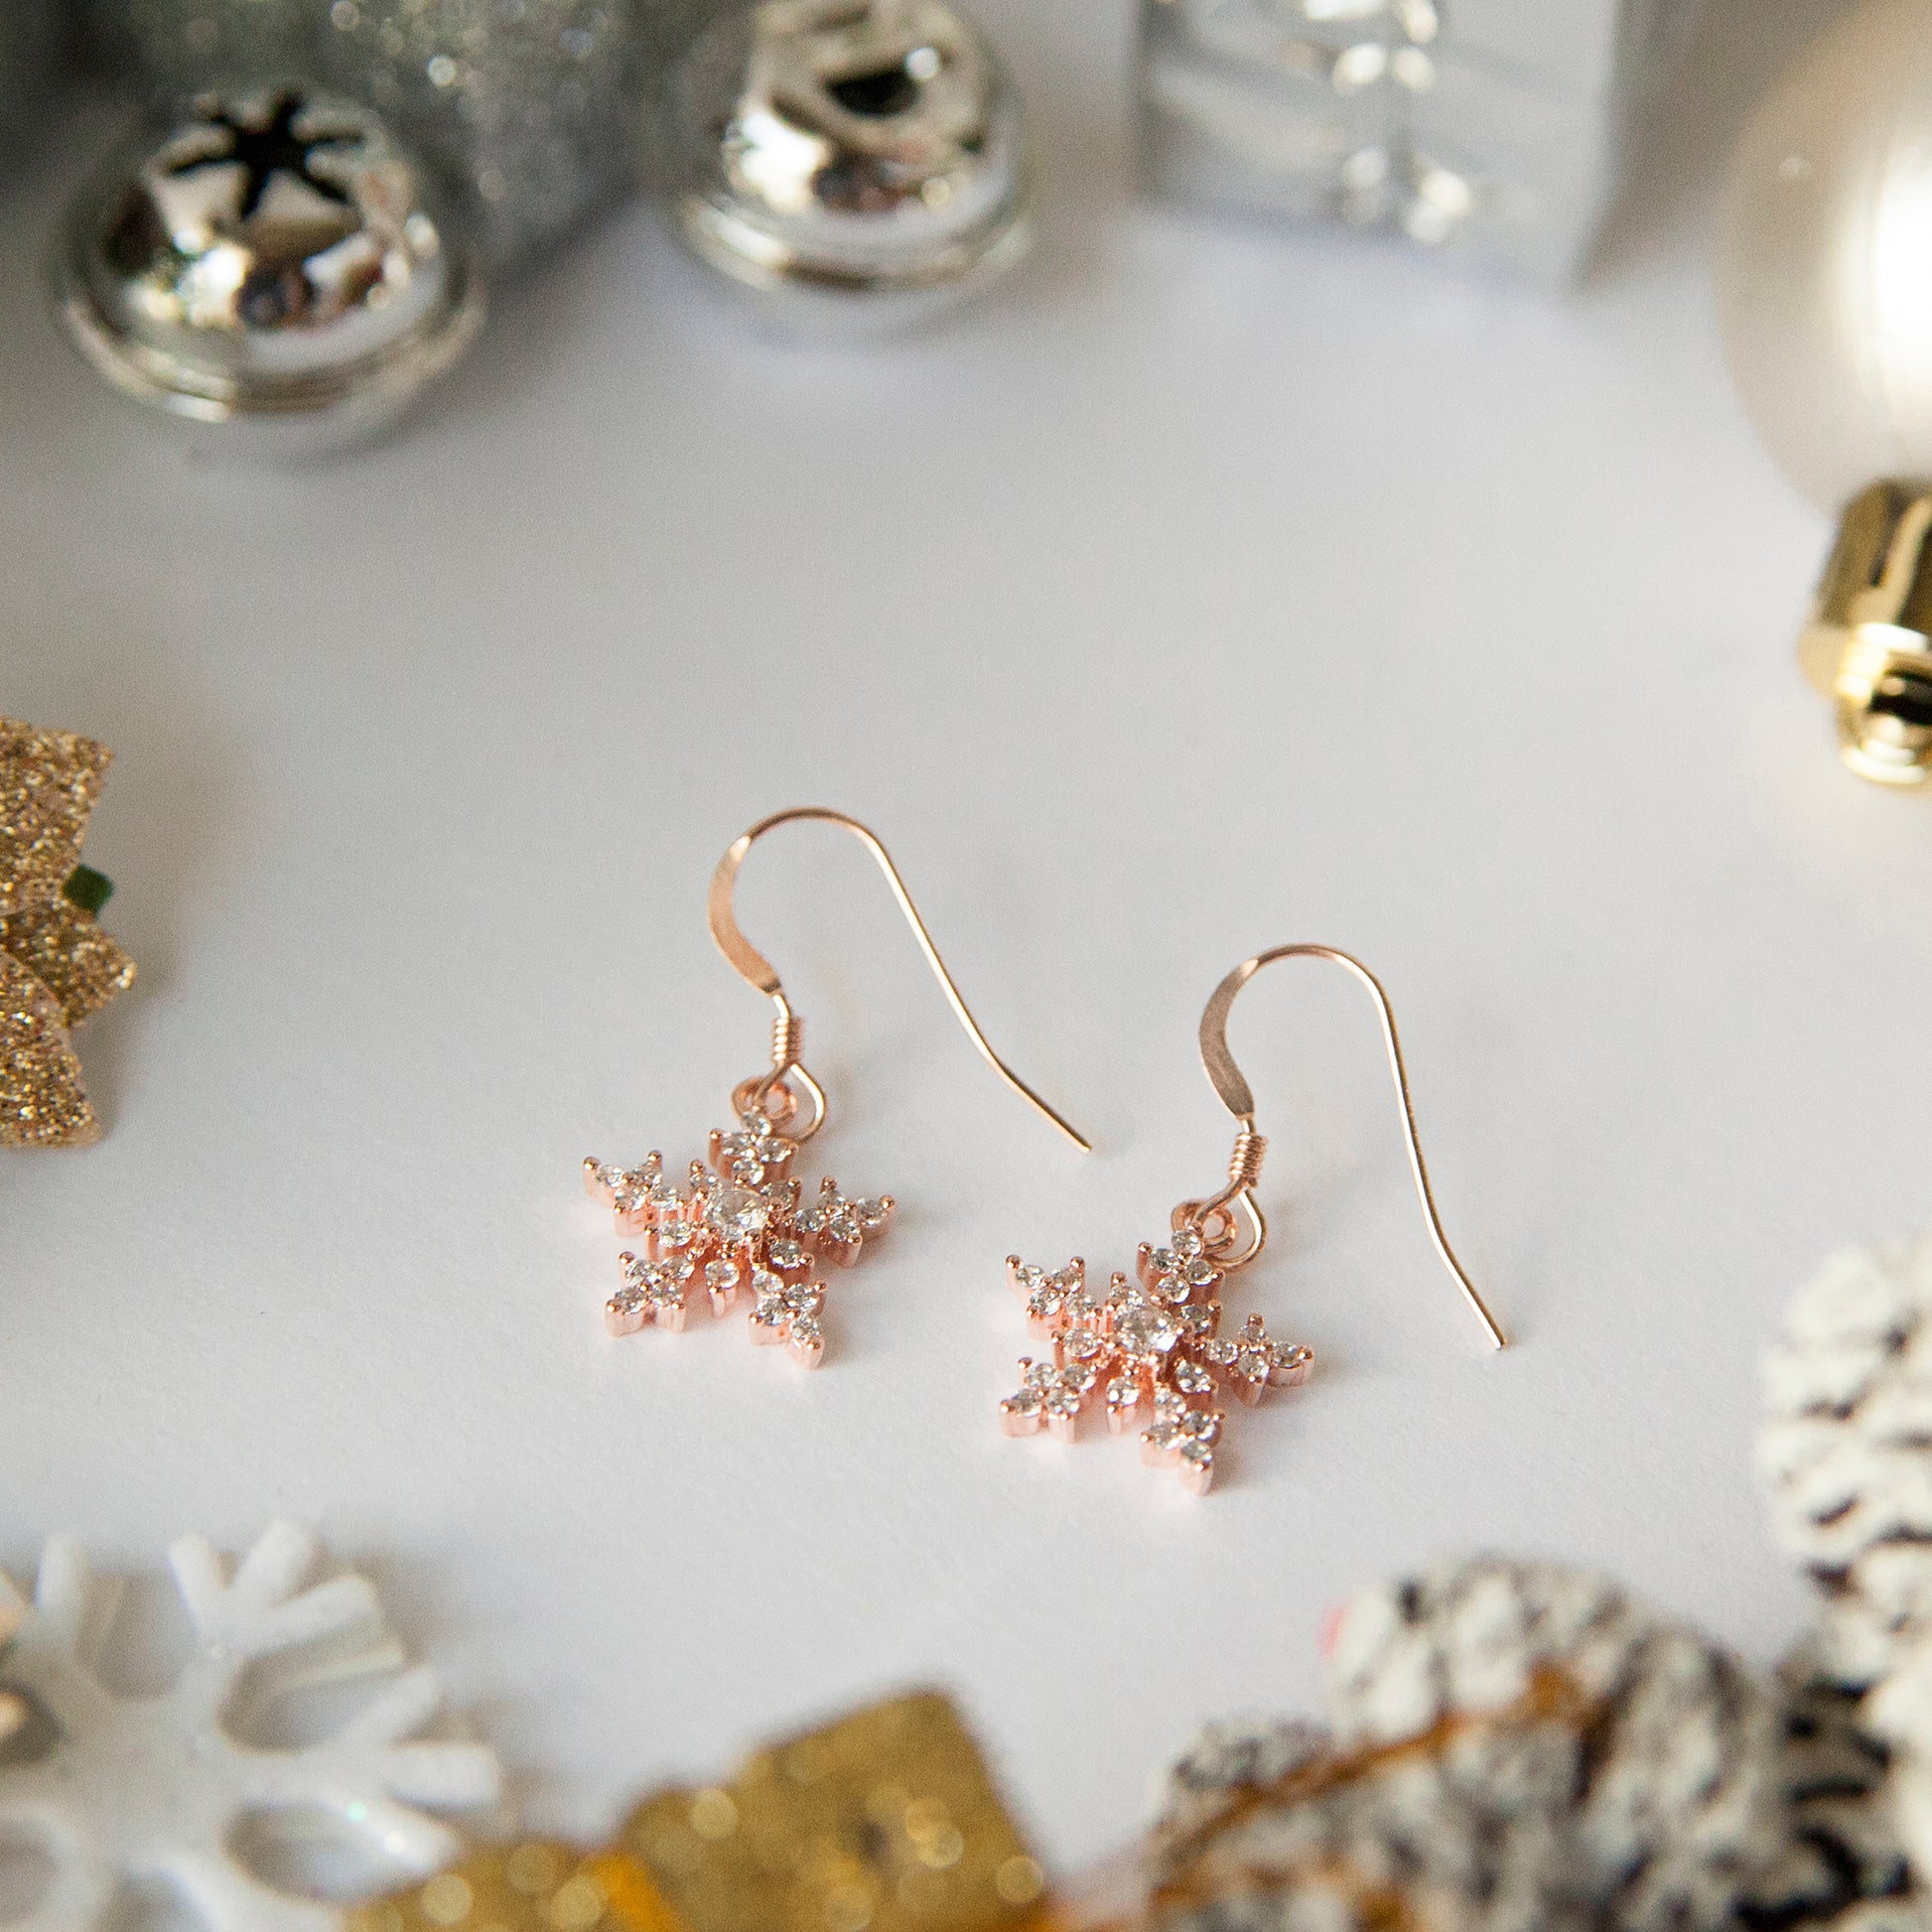 Snowflake Earrings in Rose Gold